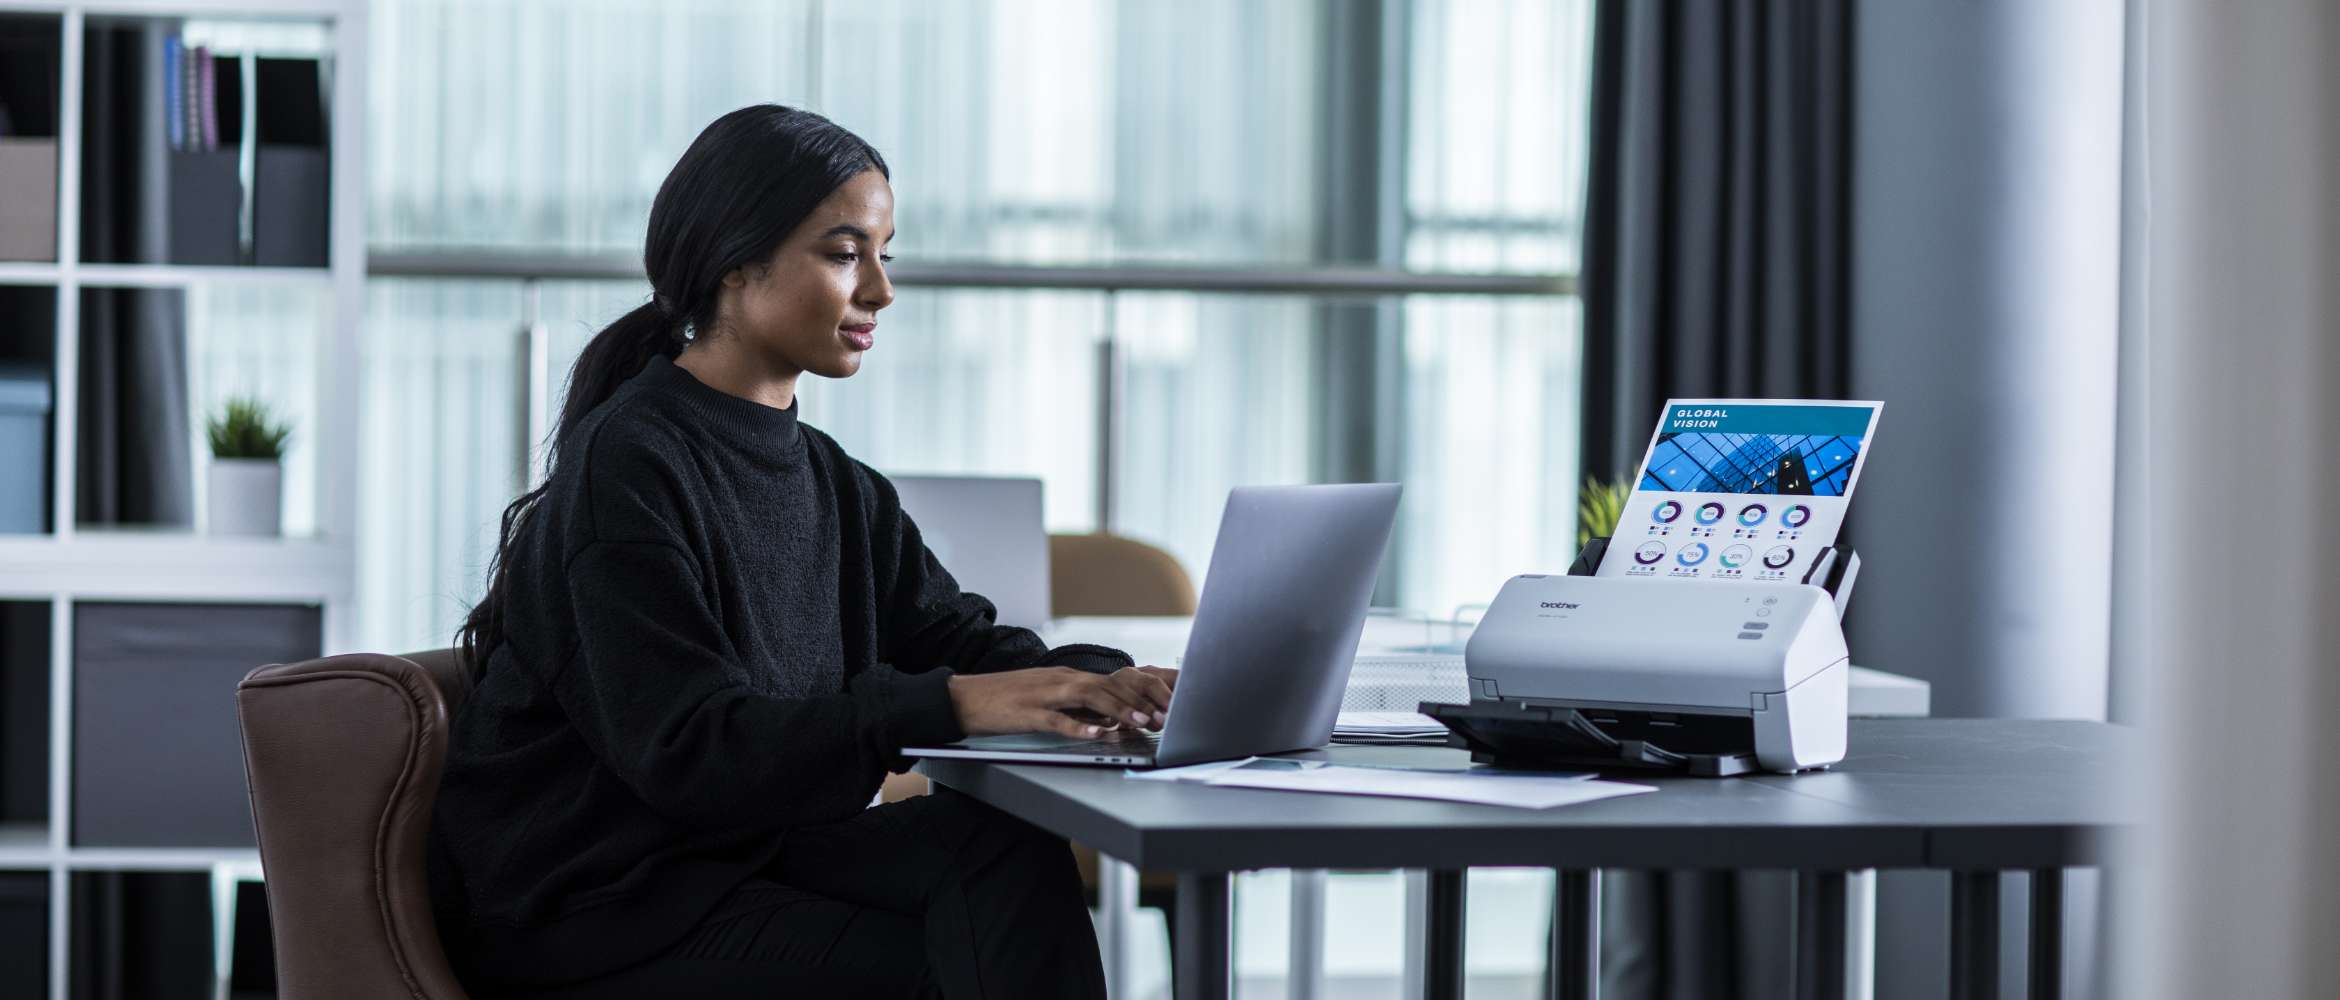 Une employée du secteur juridique est assise à un bureau et travaille sur son ordinateur portable, avec un scanner de documents Brother ADS à ses côtés.